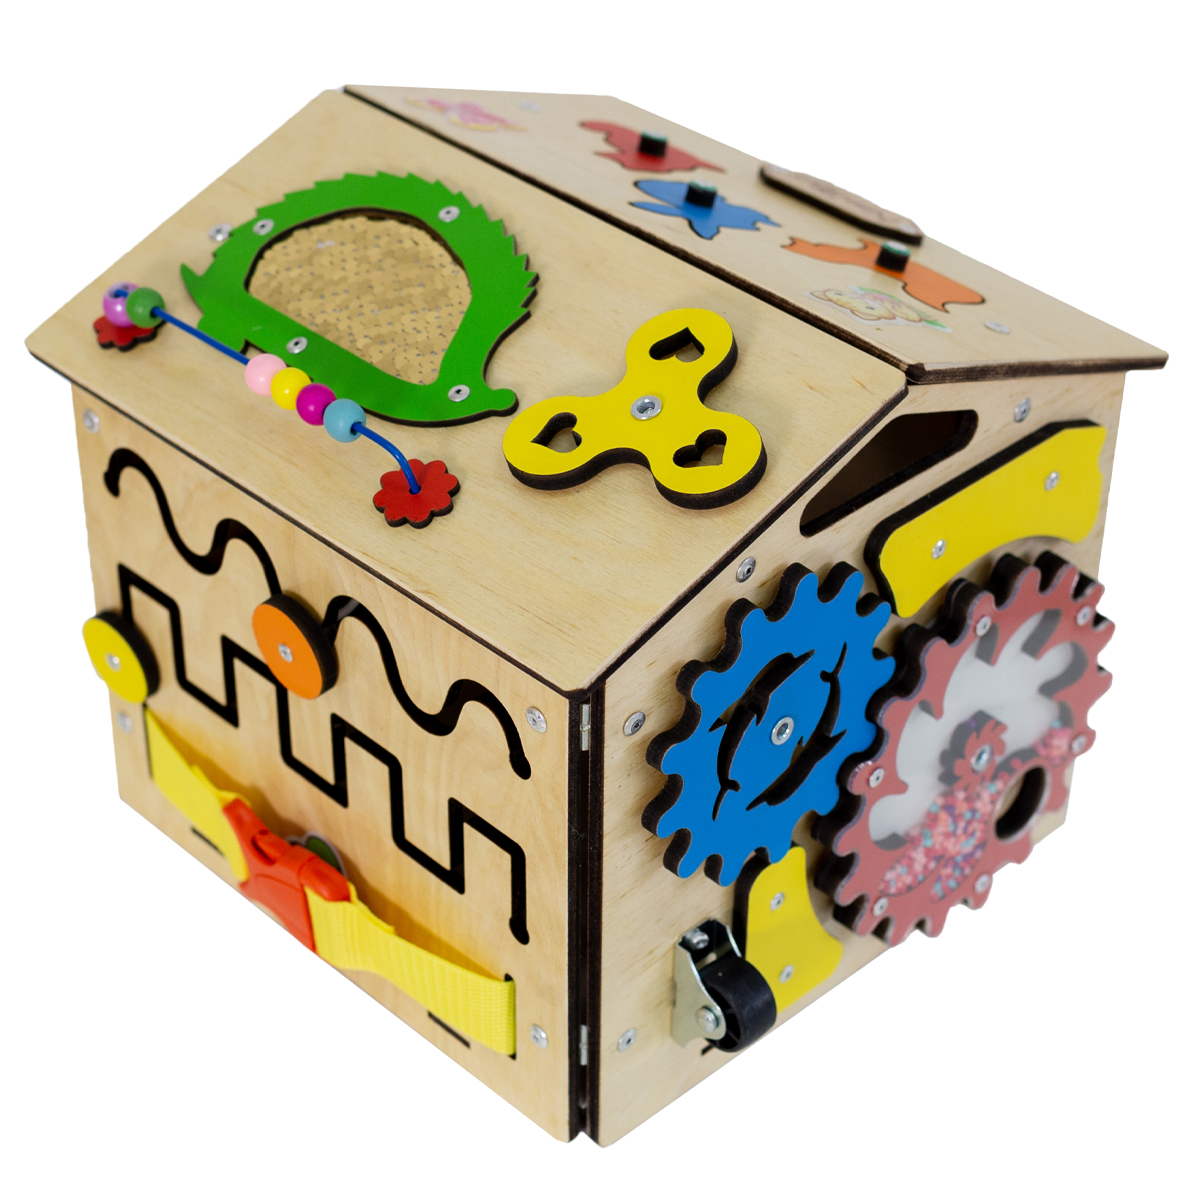 Бизиборд KimToys Домик-игрушка для девочек и мальчиков - фото 11